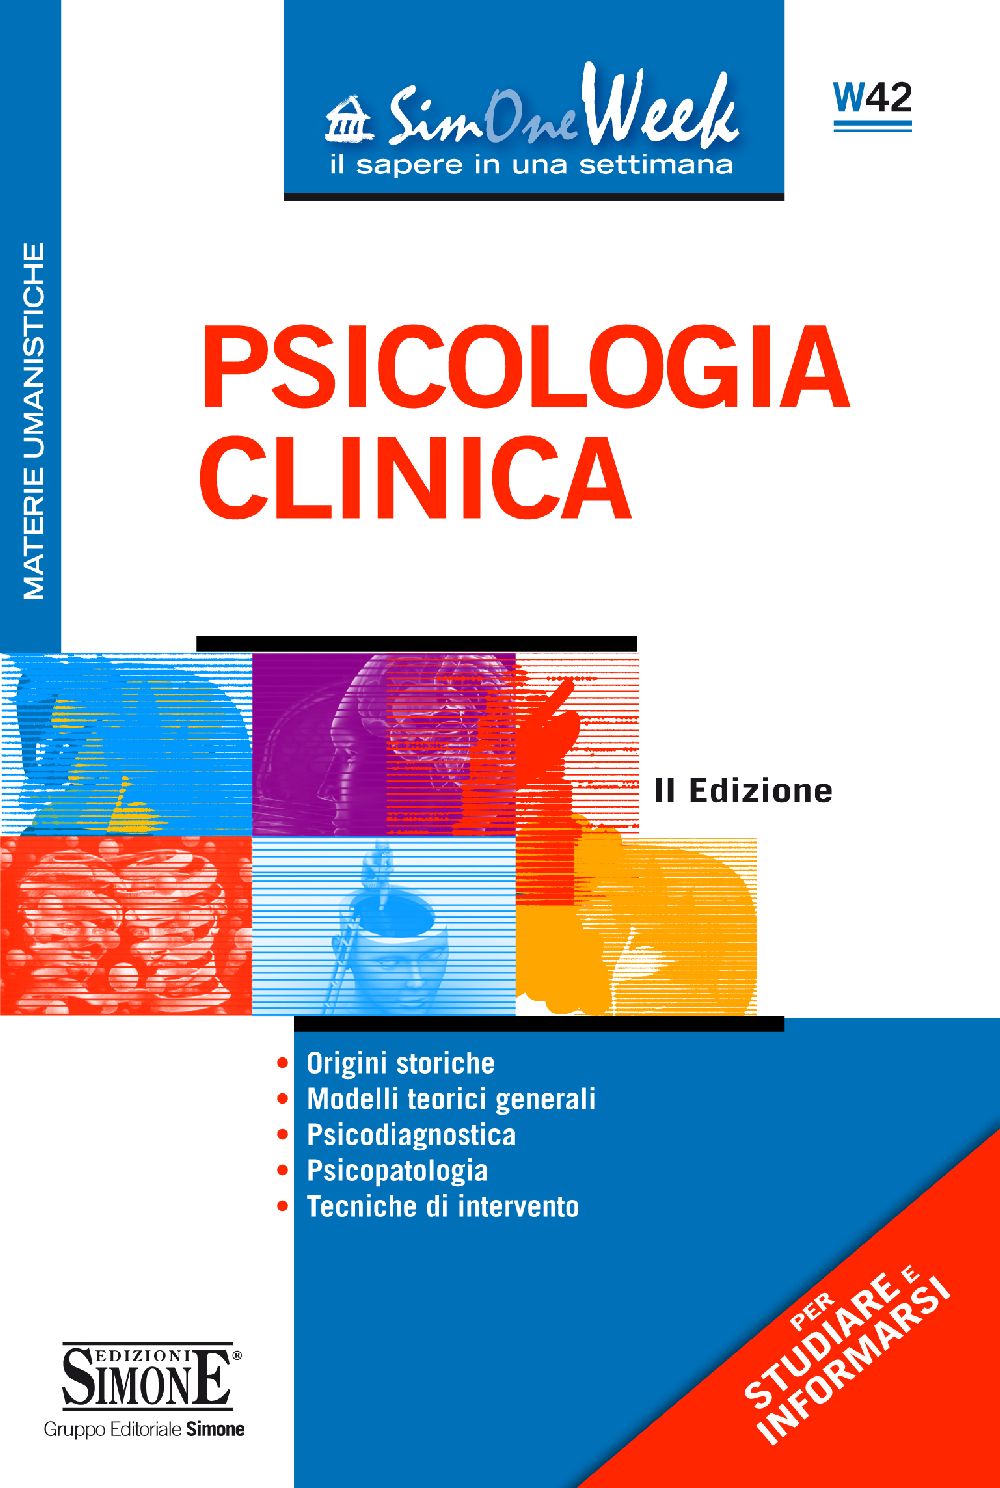 [Ebook] Psicologia Clinica